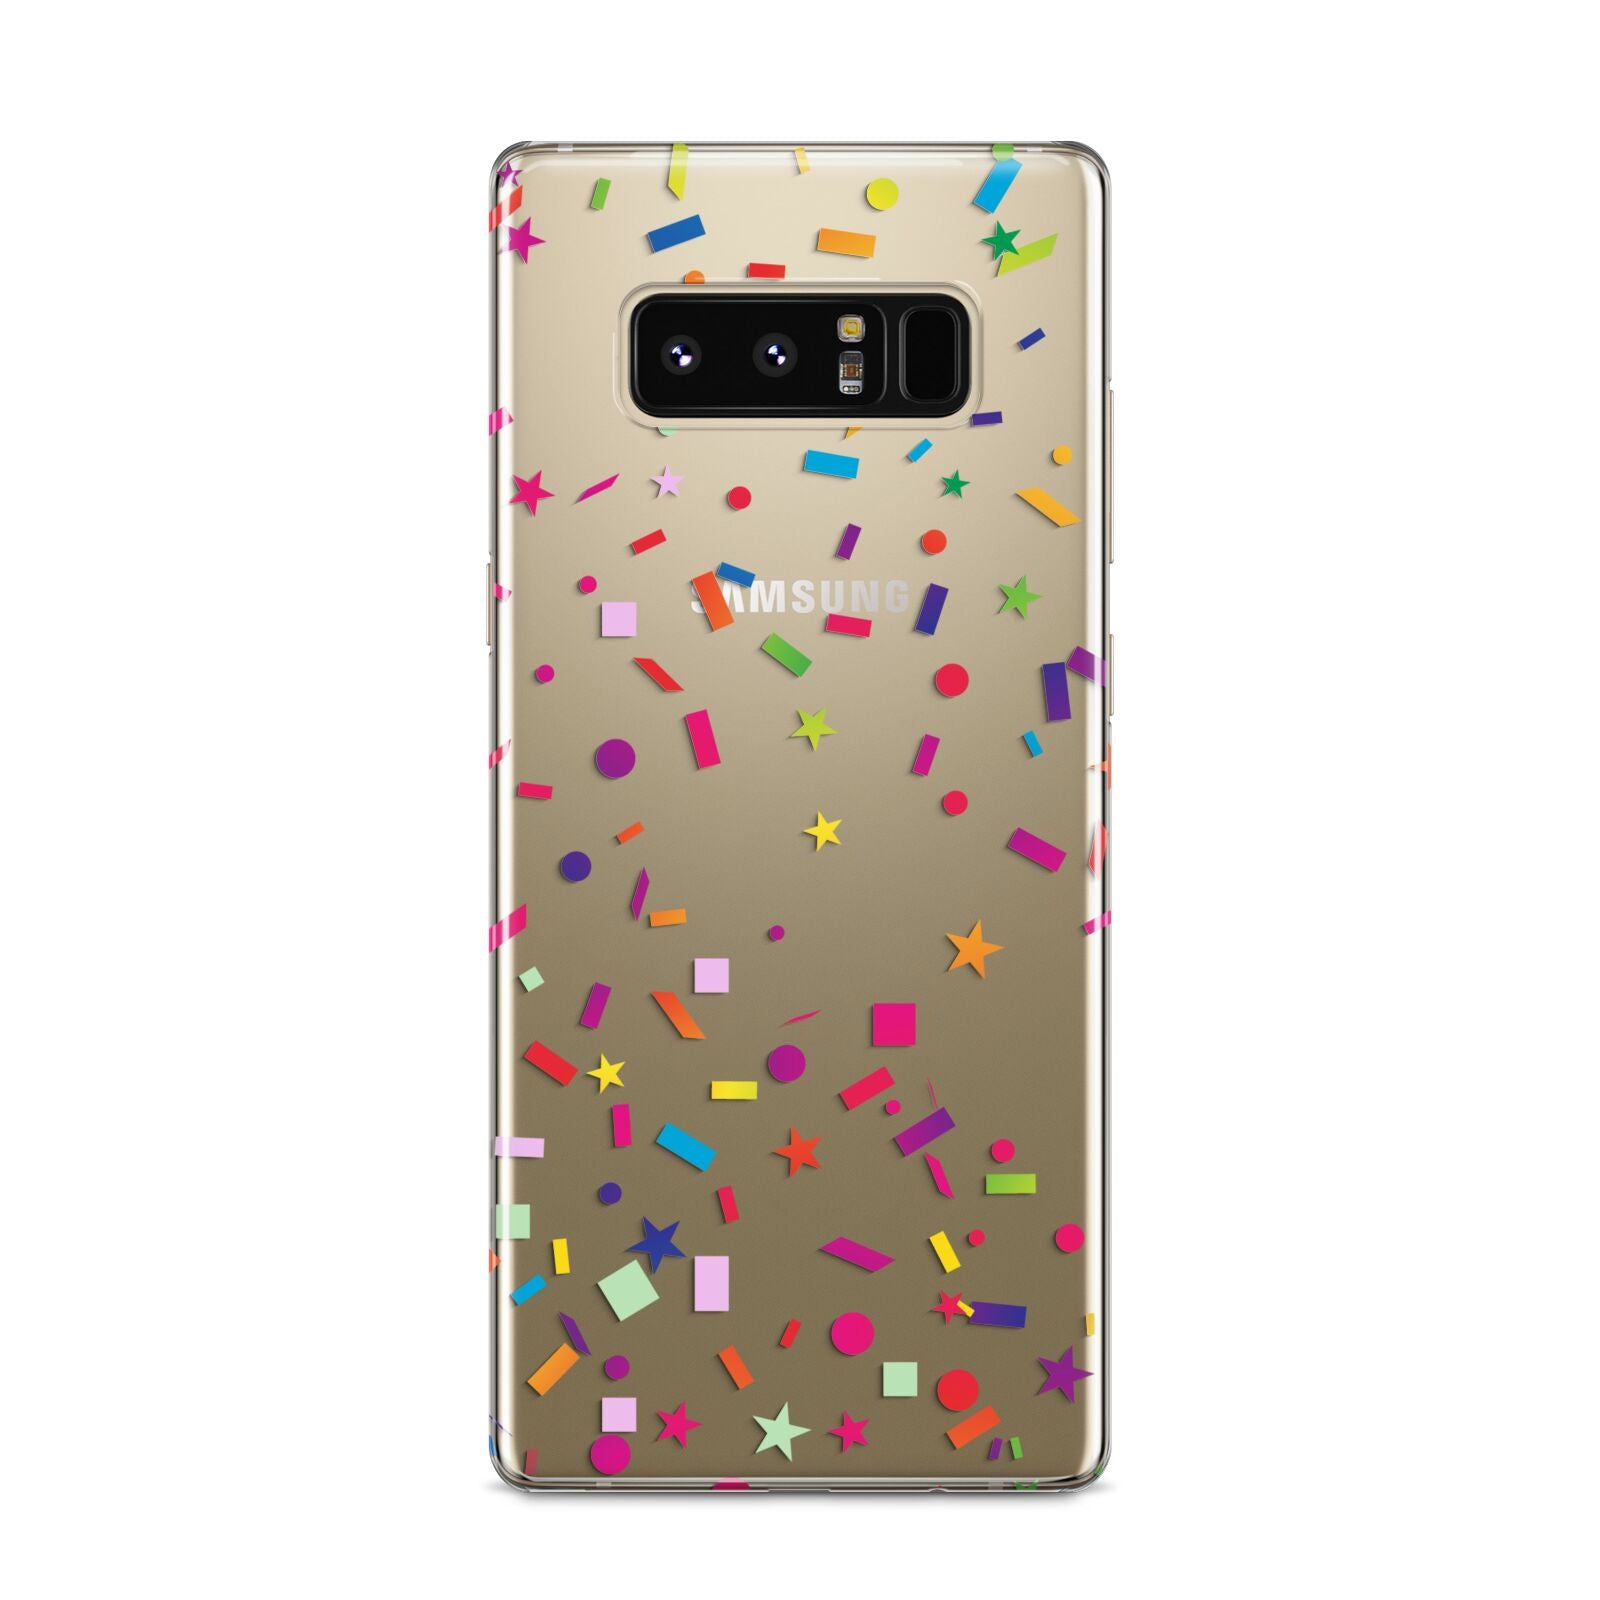 Confetti Samsung Galaxy S8 Case